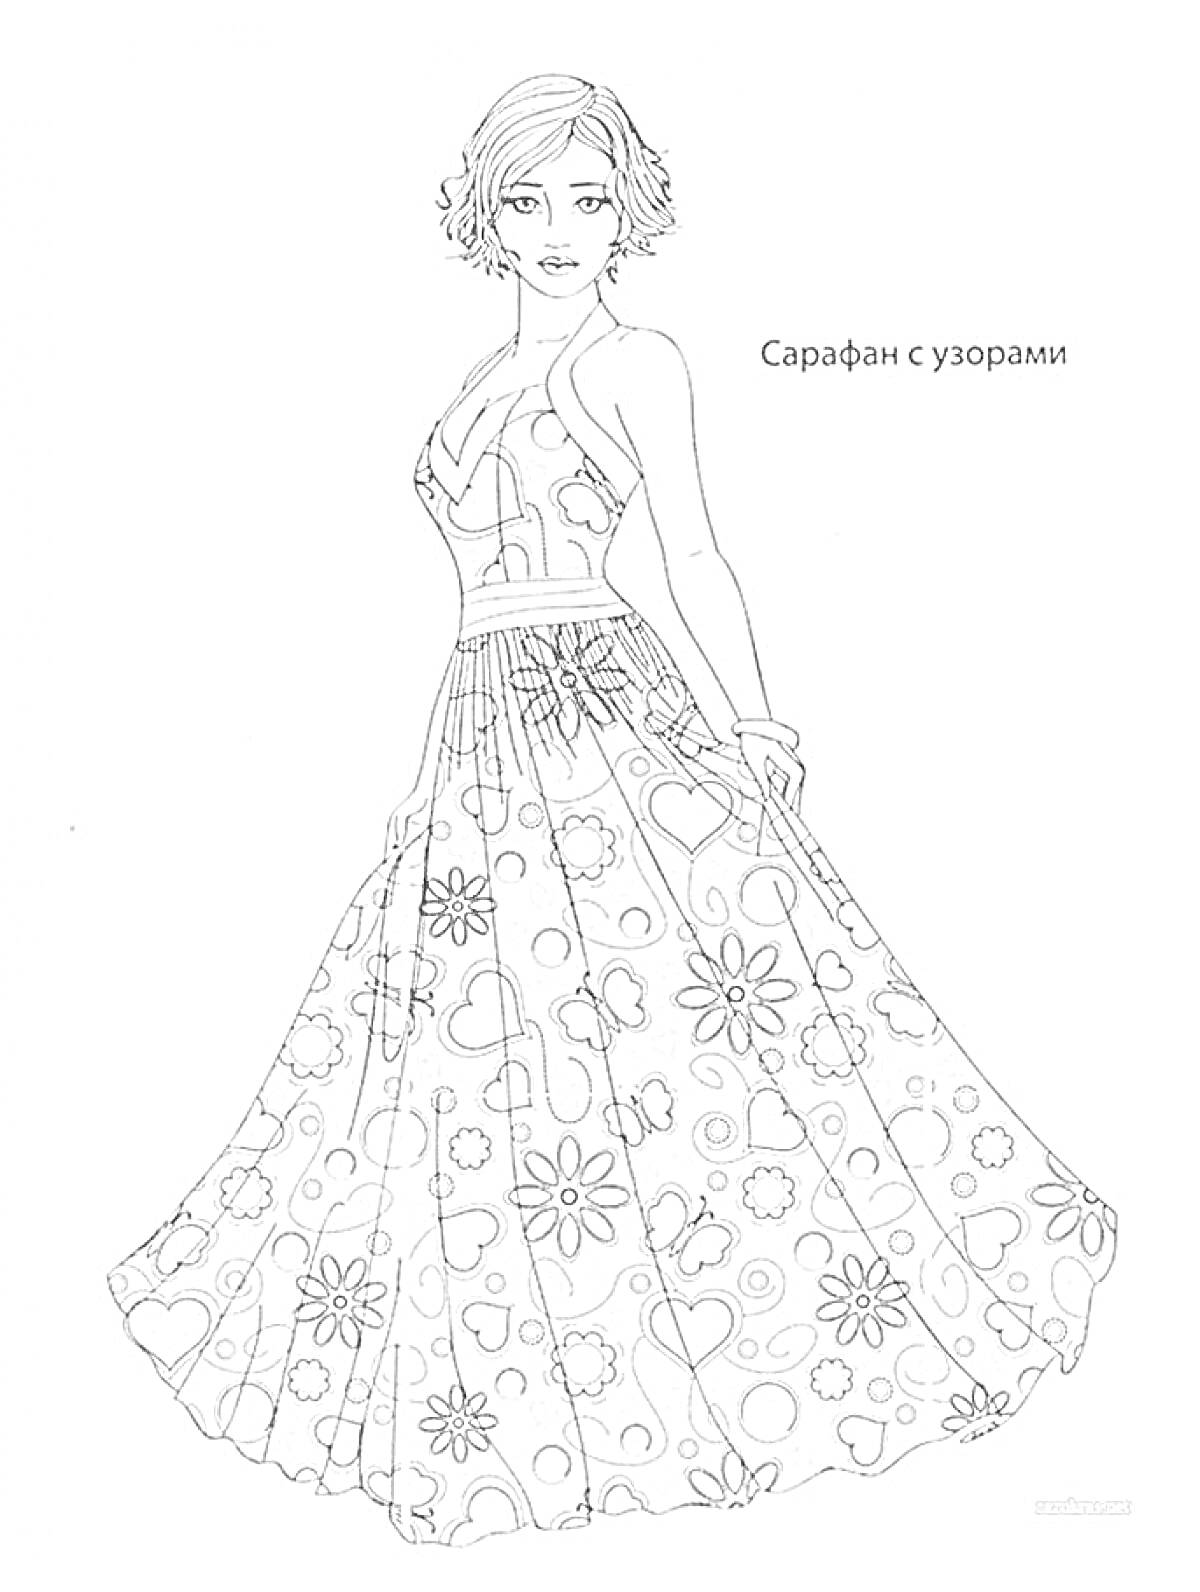 Раскраска Девушка в сарафане с узорами, длинное платье с цветочным орнаментом и сердечками